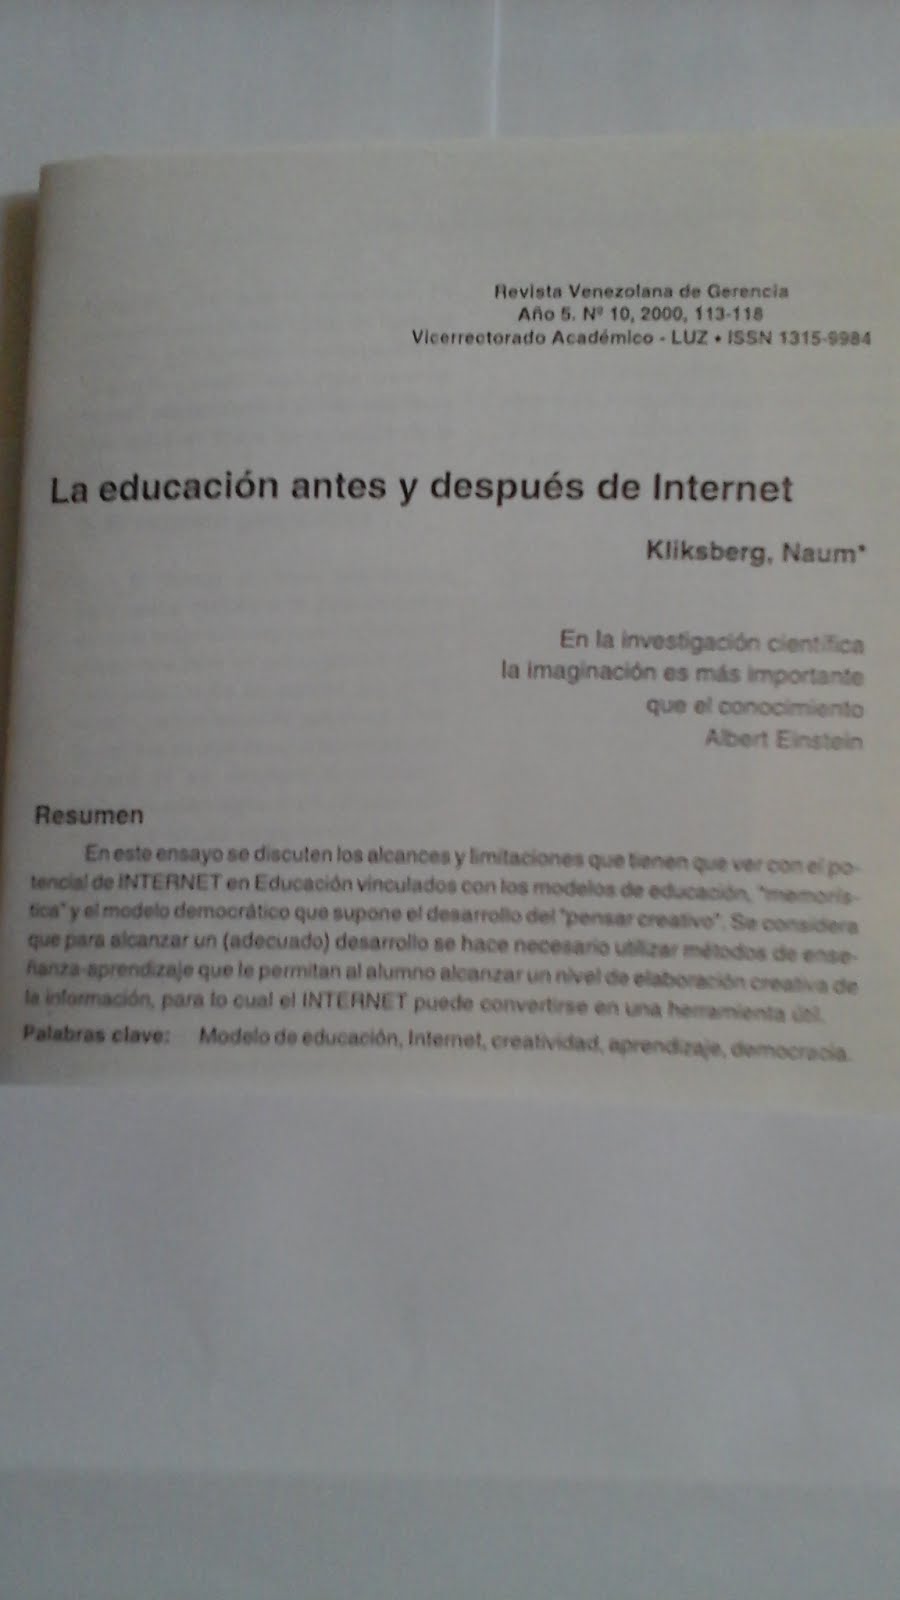 36 - REVISTA DE LA UNIVERSIDAD DE ZULIA, VENEZUELA, 4//2000. PUBLICACIÓN DEL ARTÍCULO DE